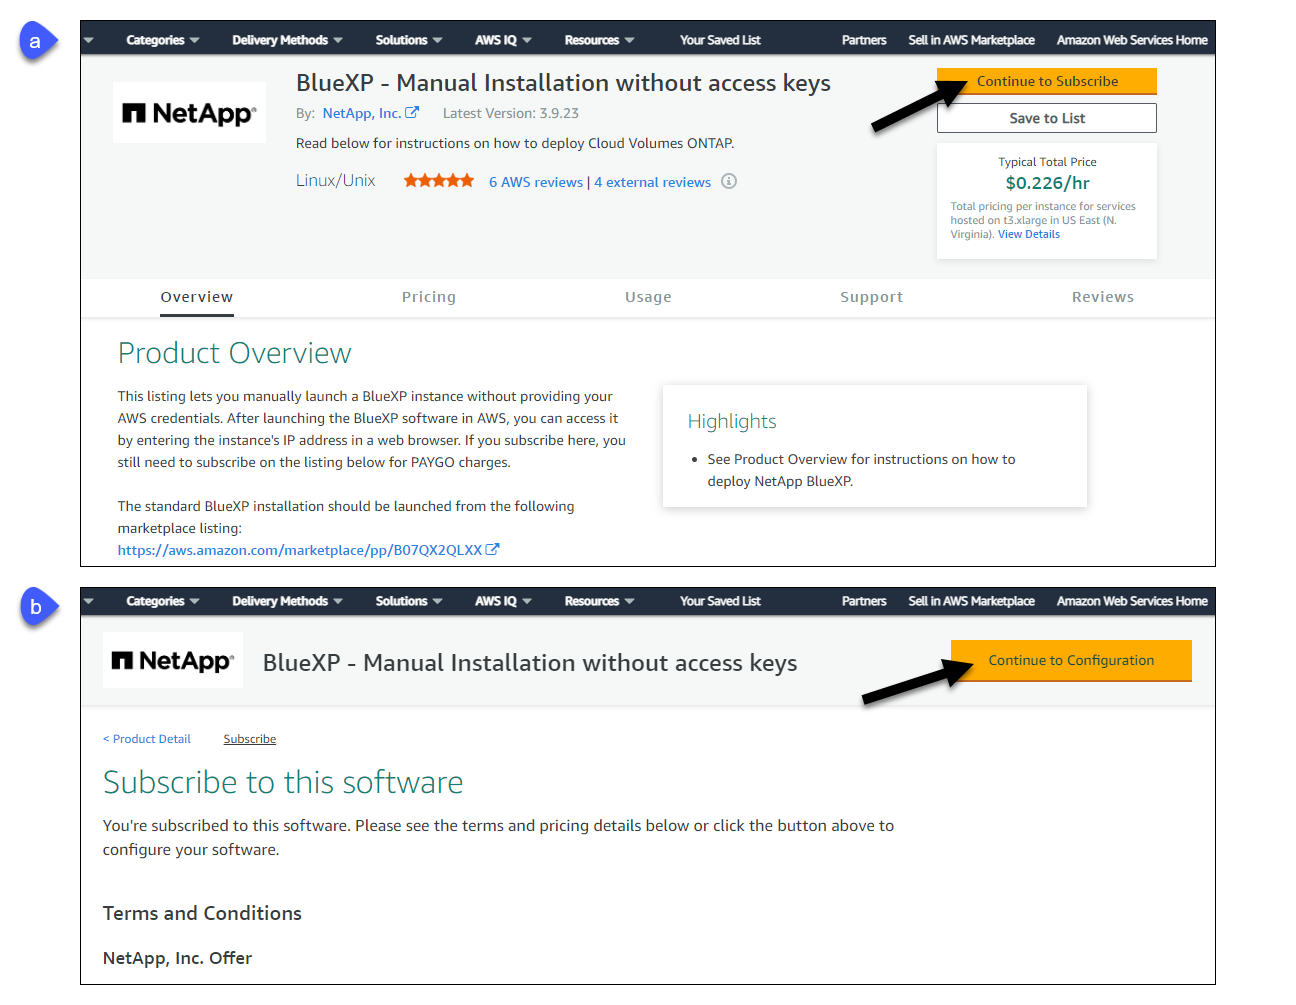 屏幕截图显示了 AWS Marketplace 上的 Continue to Subscribe and Continue to Configuration 按钮。